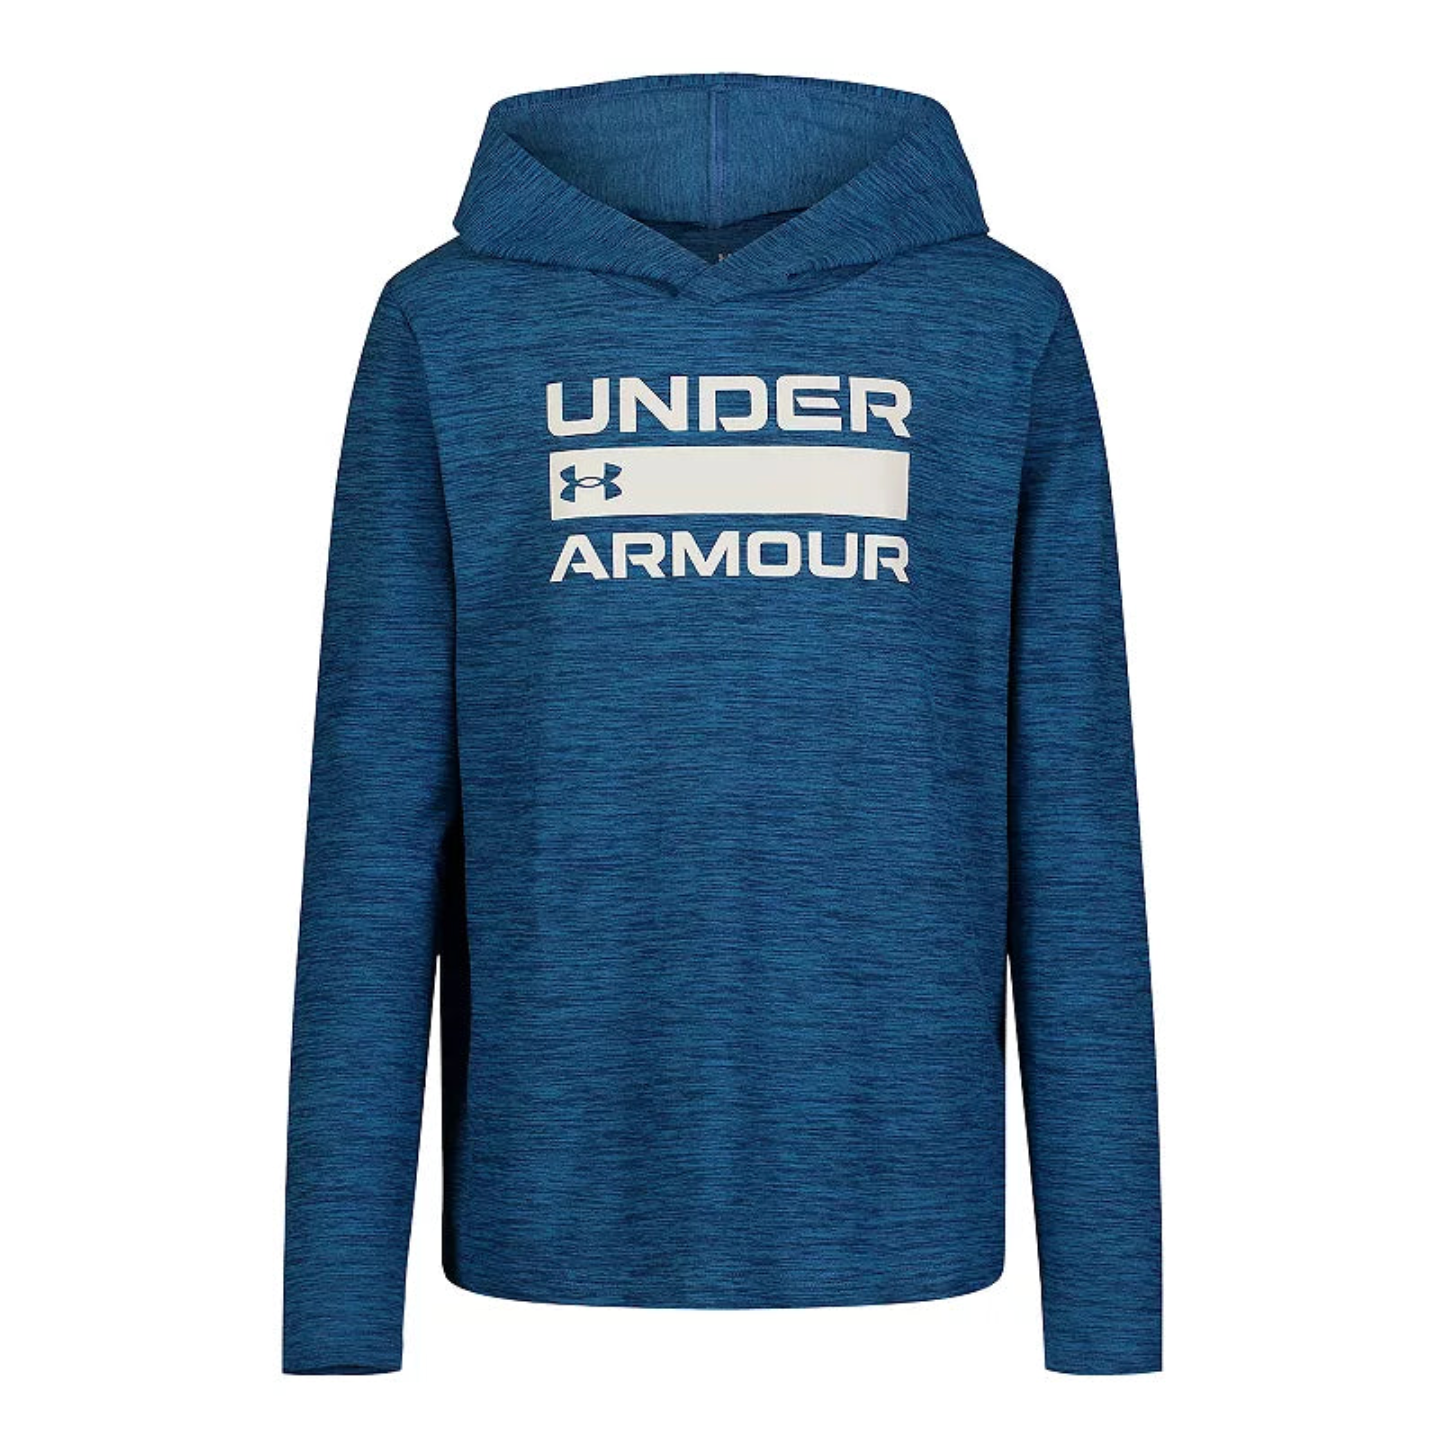 http://www.littlegiantkidz.com/cdn/shop/files/Under-Armour-Boys-UA-Logo-Stack-Hoodie-Varsity-Blue-UNDER-ARMOUR.png?v=1696368716&width=2048